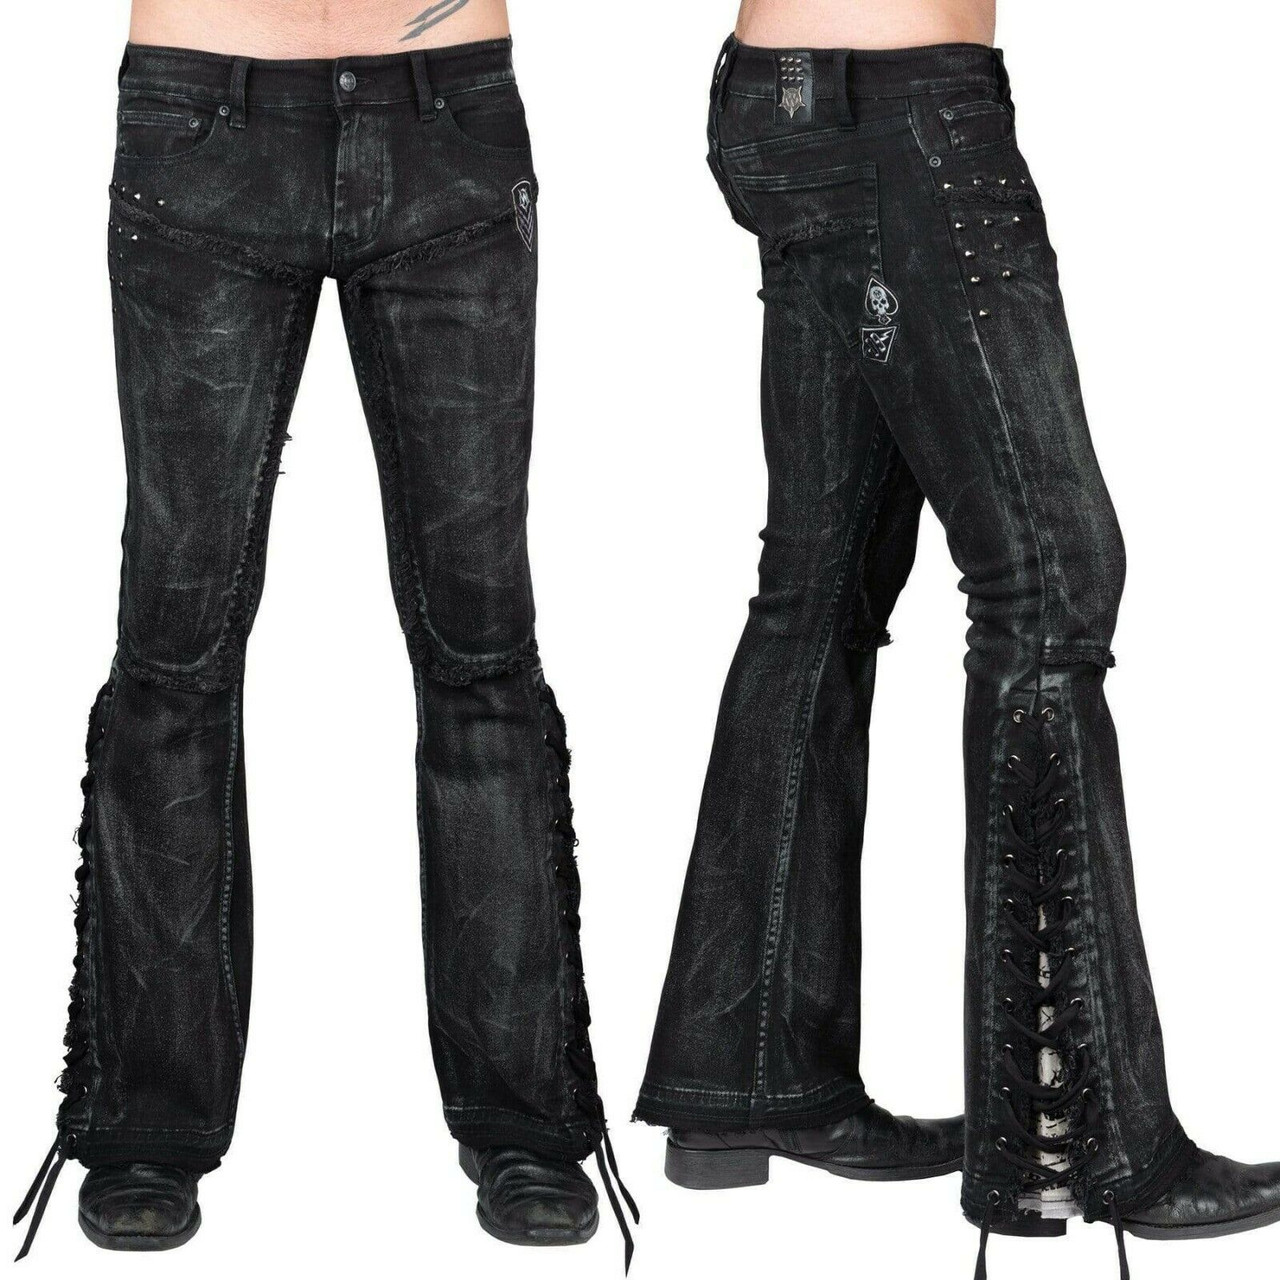 Rockstar Pants Denim - Darkstore - Order gothic fashion online or